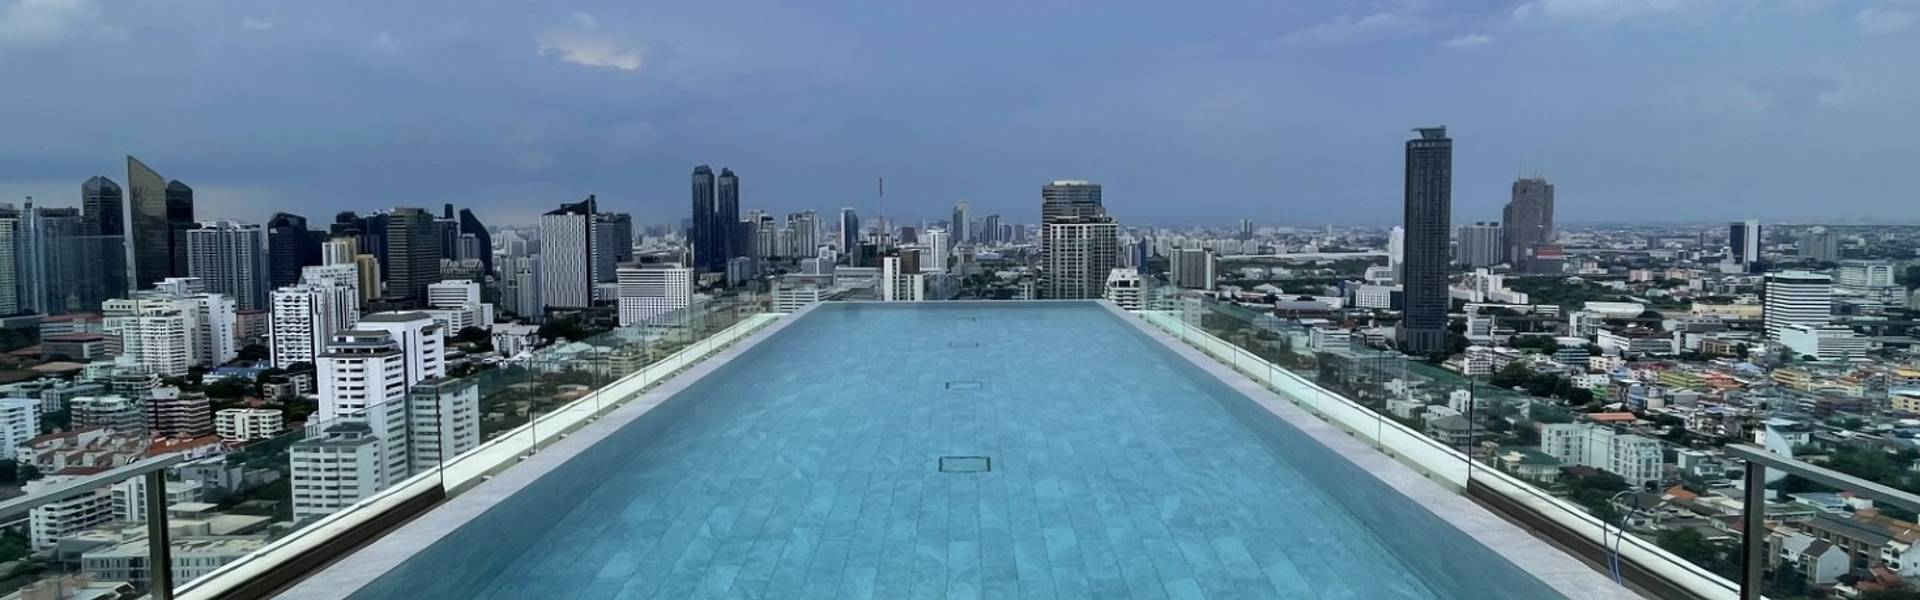 137 Pillars Suites & Residences - Infinity Rooftop Pool